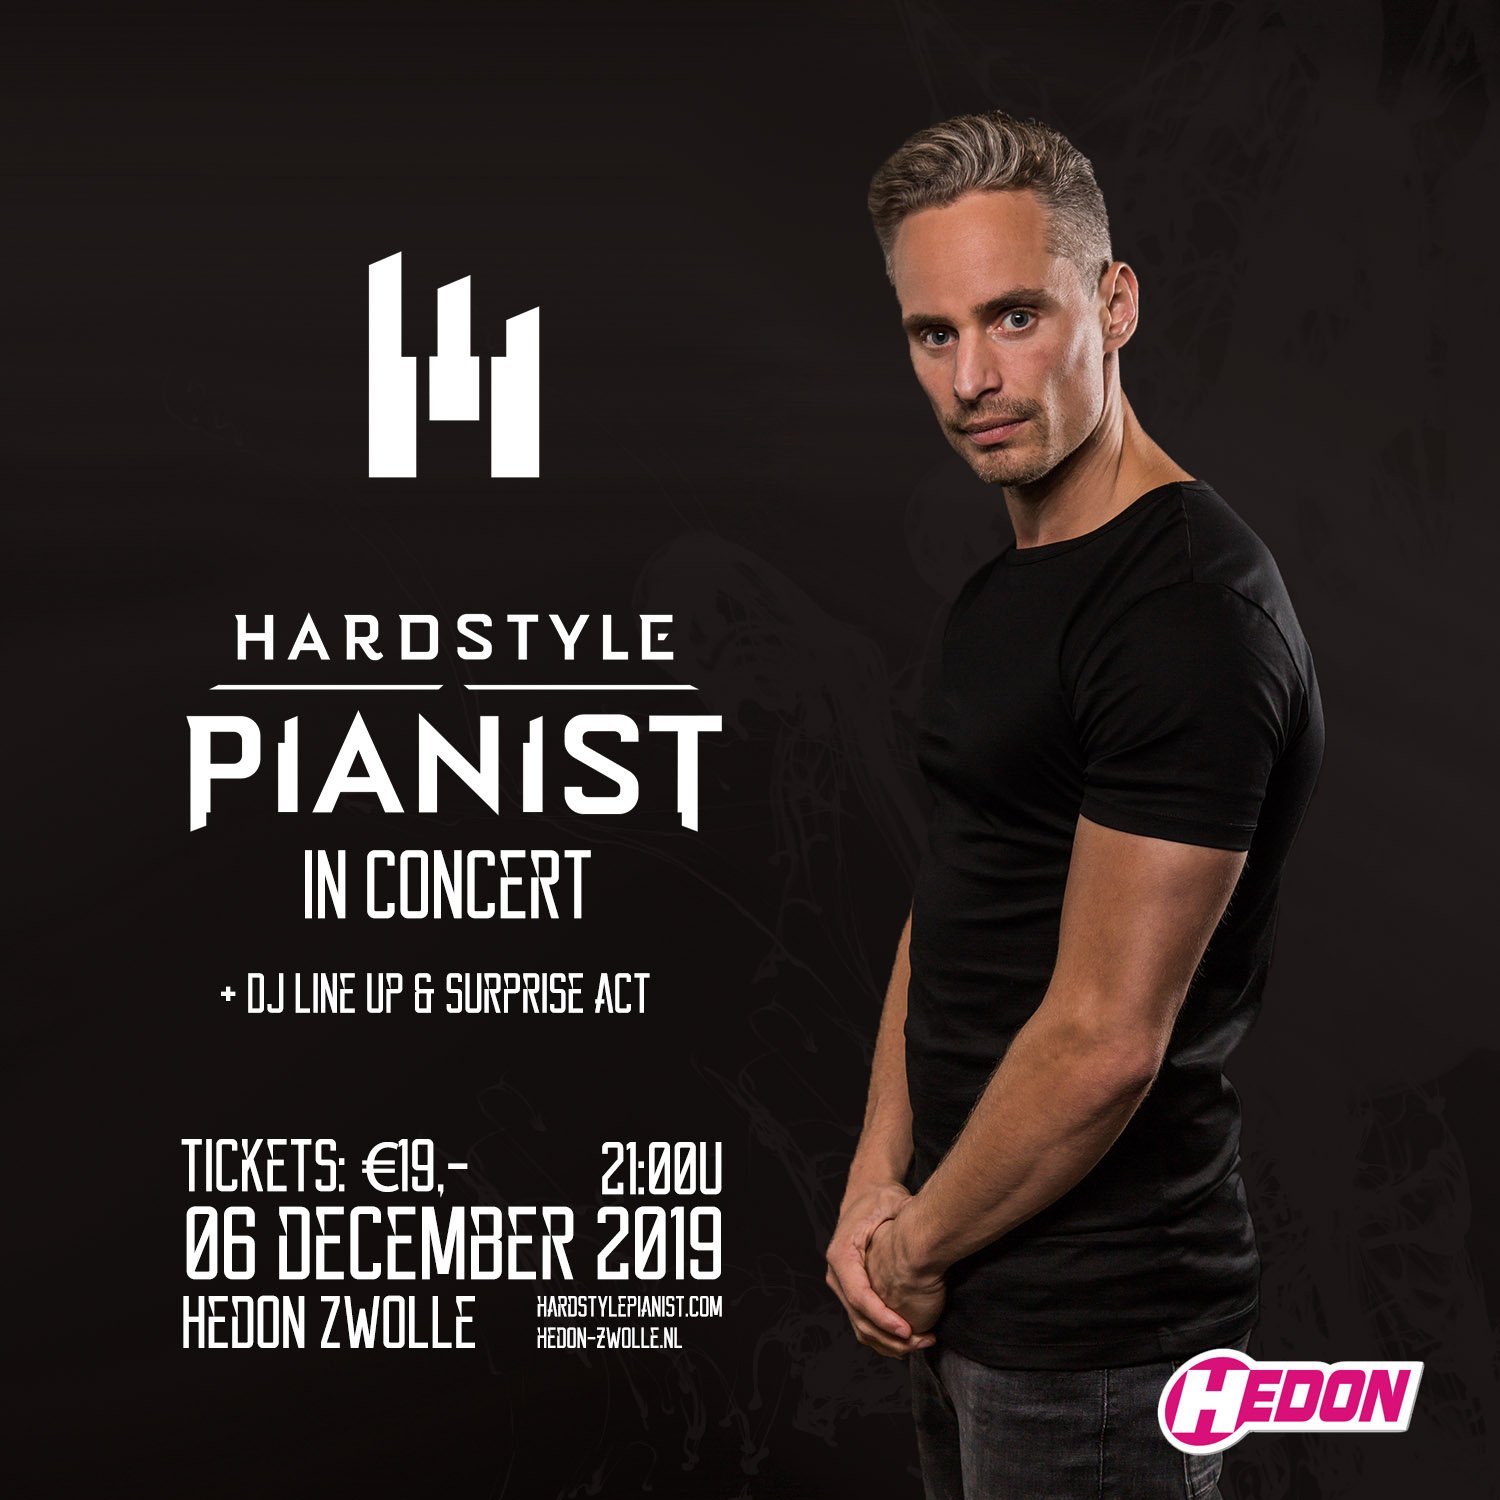 Hardstyle PIanist In Concert - mix van klassiek en dance muziek